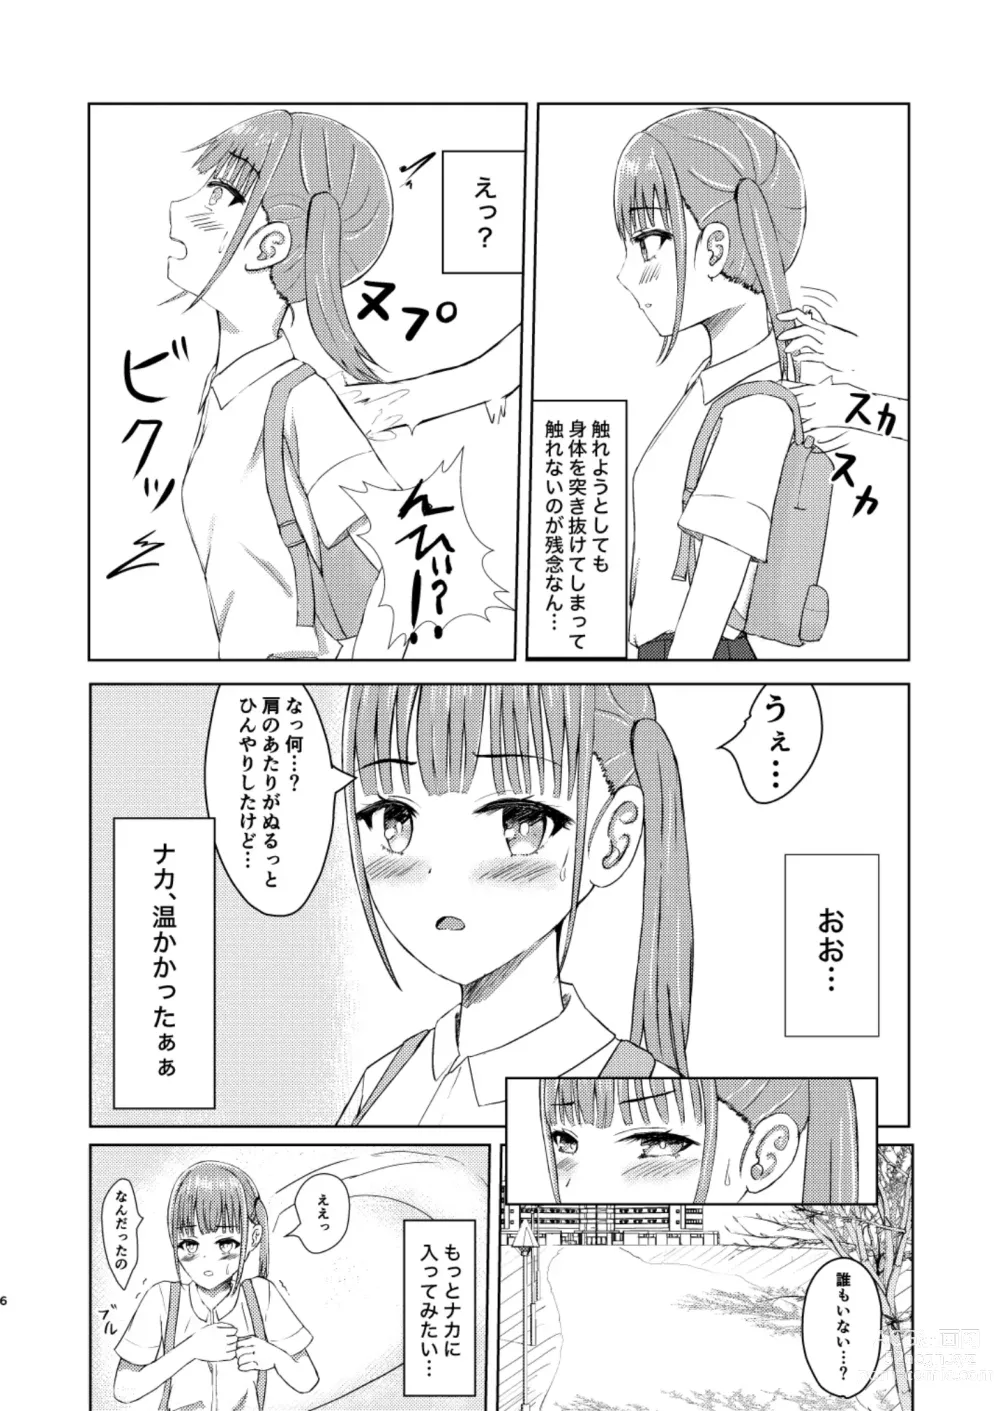 Page 6 of doujinshi Kawaii Ko Mitsuketa node Naka ni Haitte Mita!